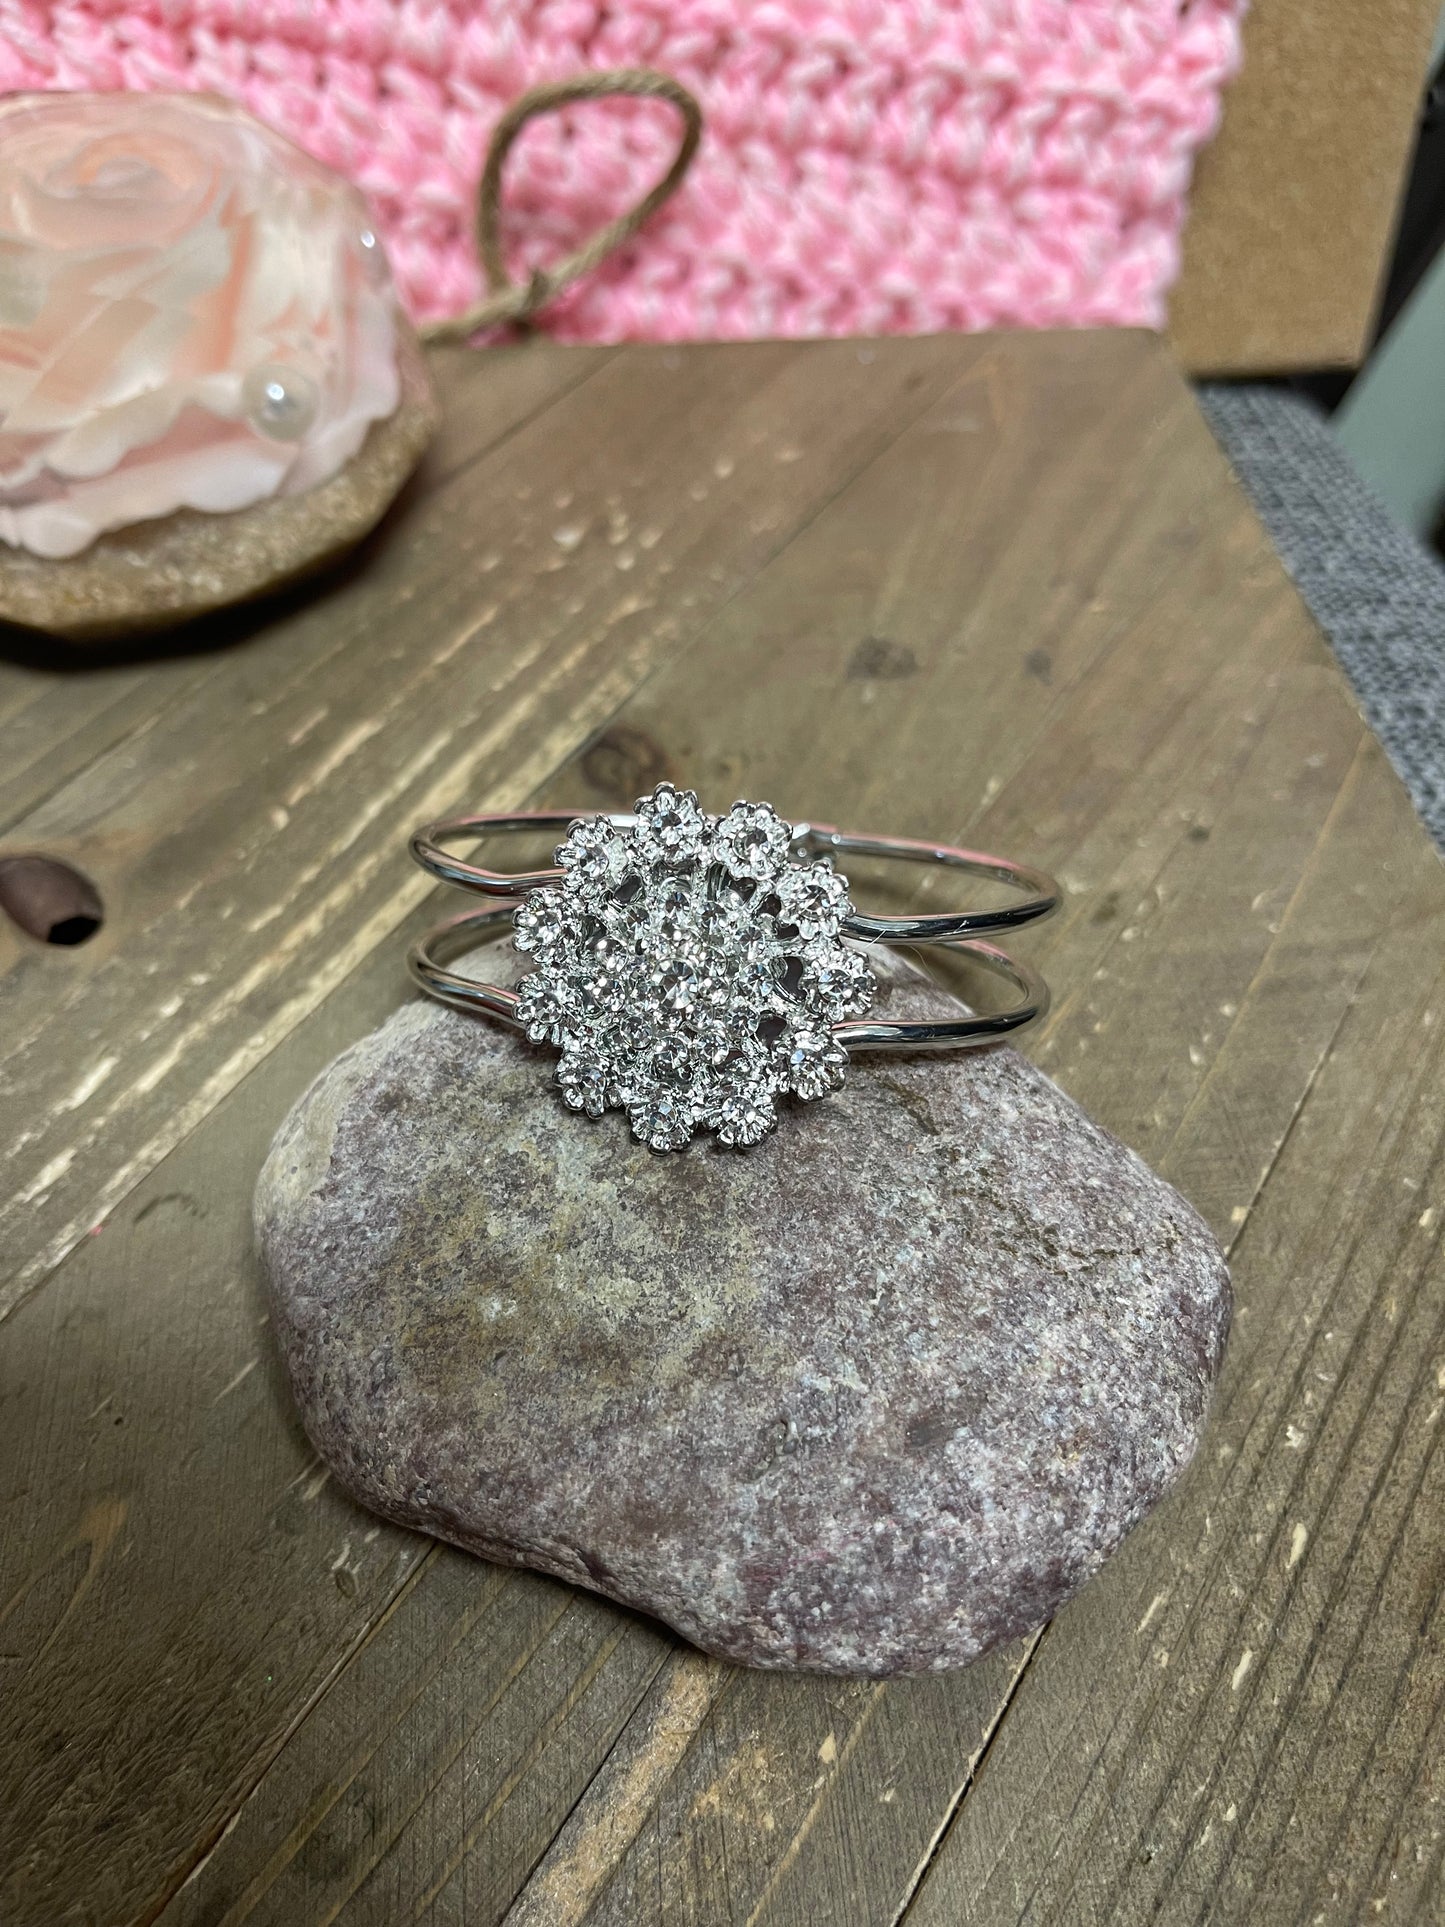 Silver Crystal Rhinestone flower Broach (BT211-56SFLOWERBT) on a Single Silver Bangle Cuff BraceletPink tiful of LOVE